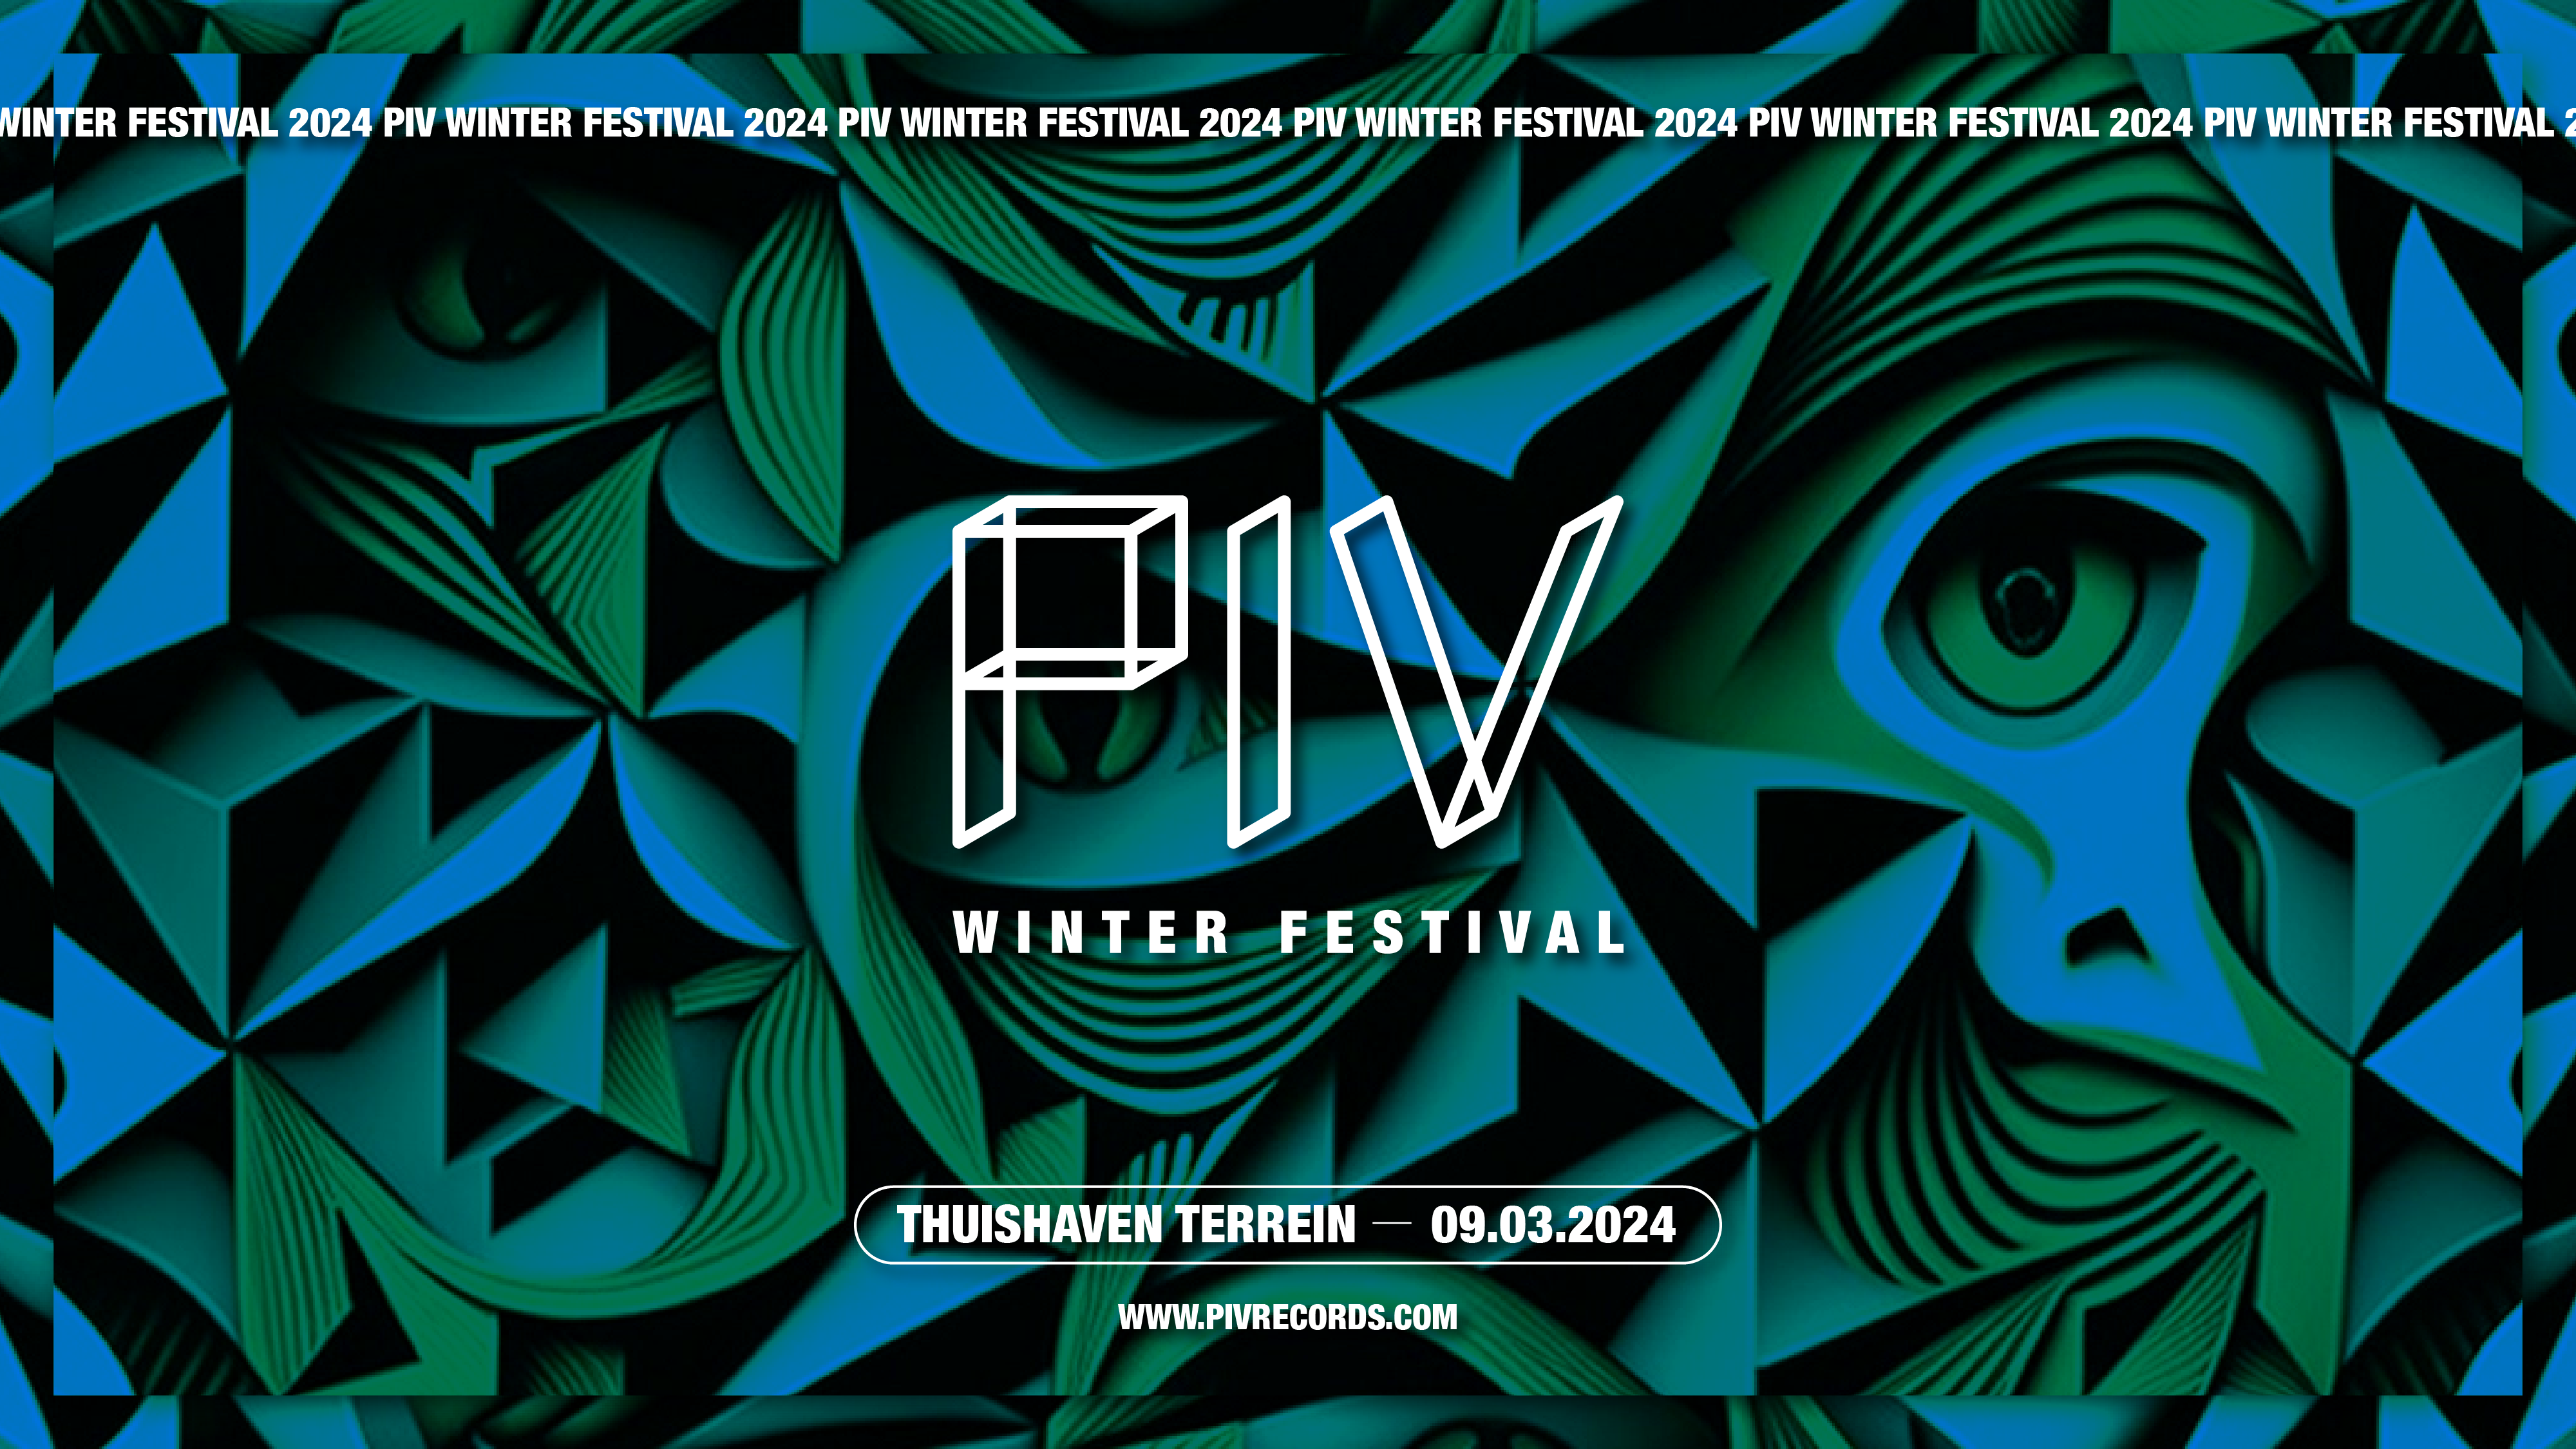 PIV Winter Festival - フライヤー表